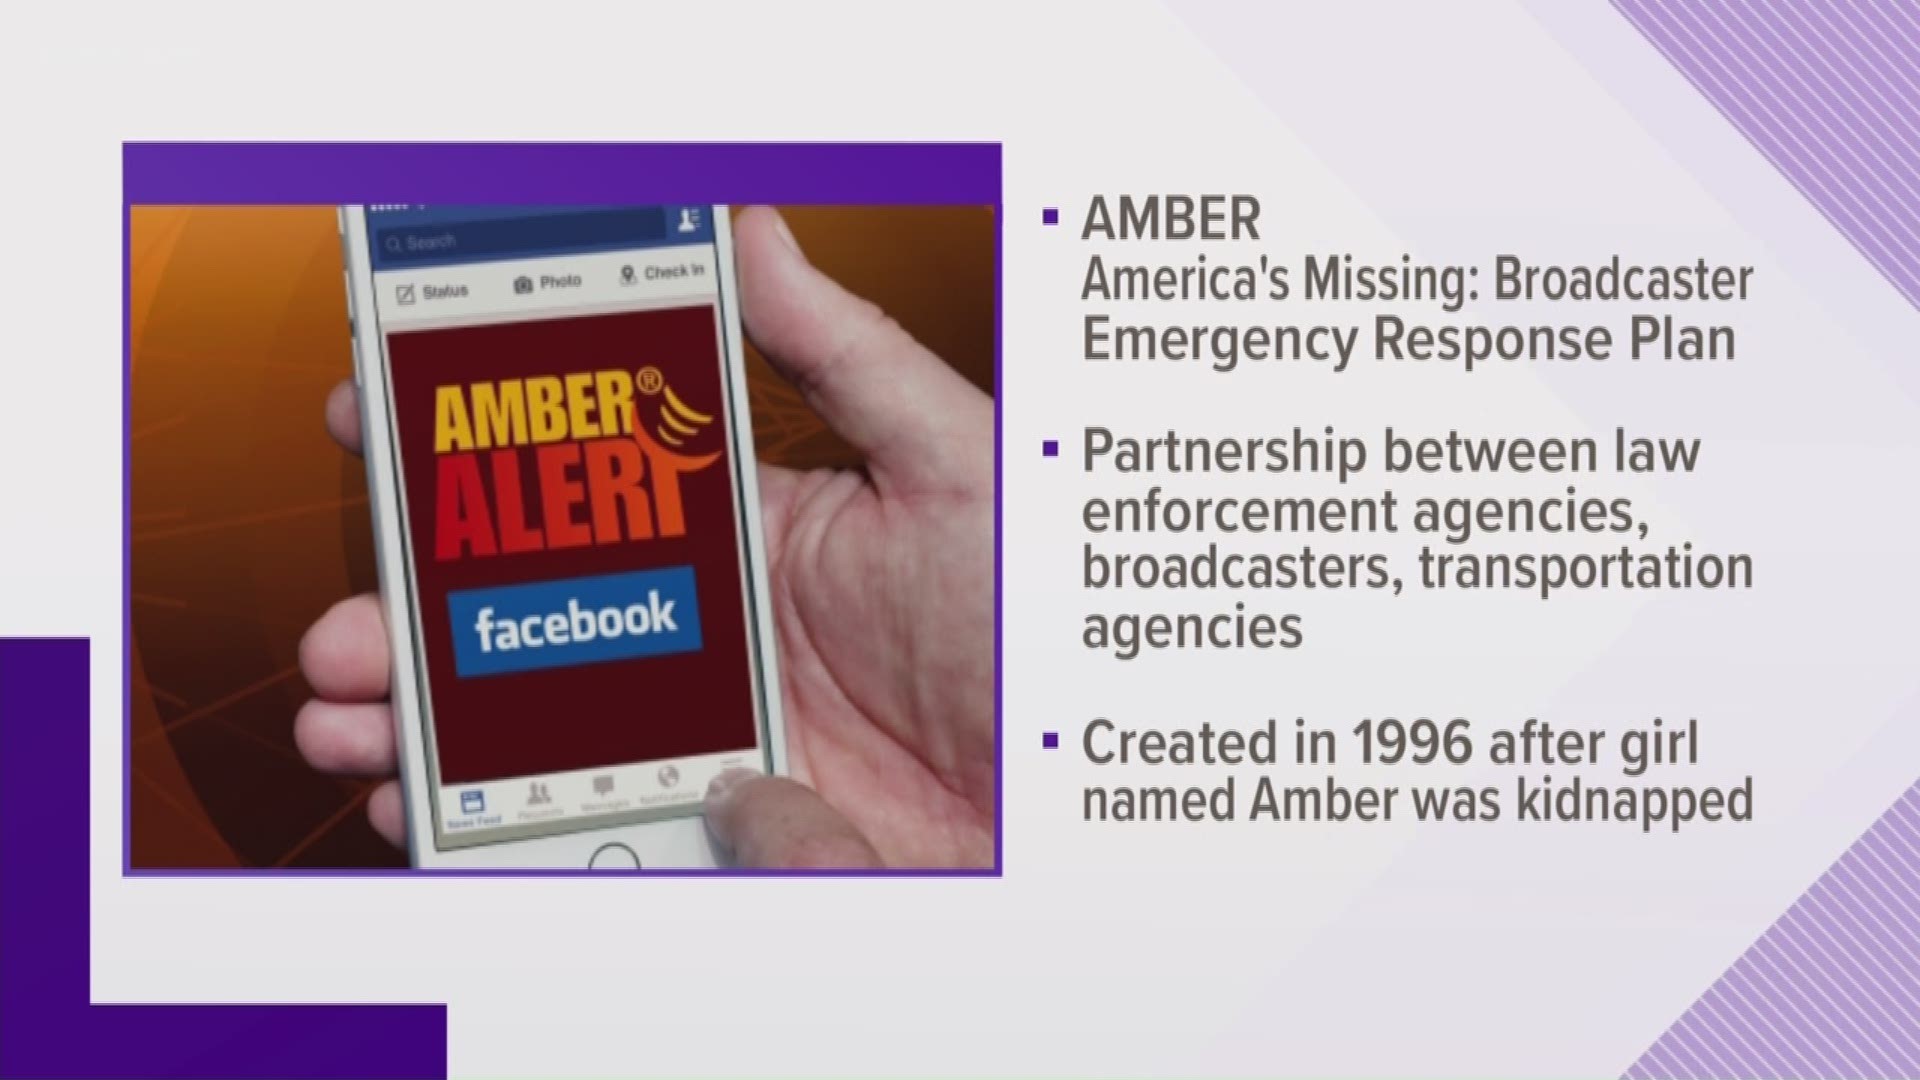 Karen Swensen explains what an Amber Alert means.